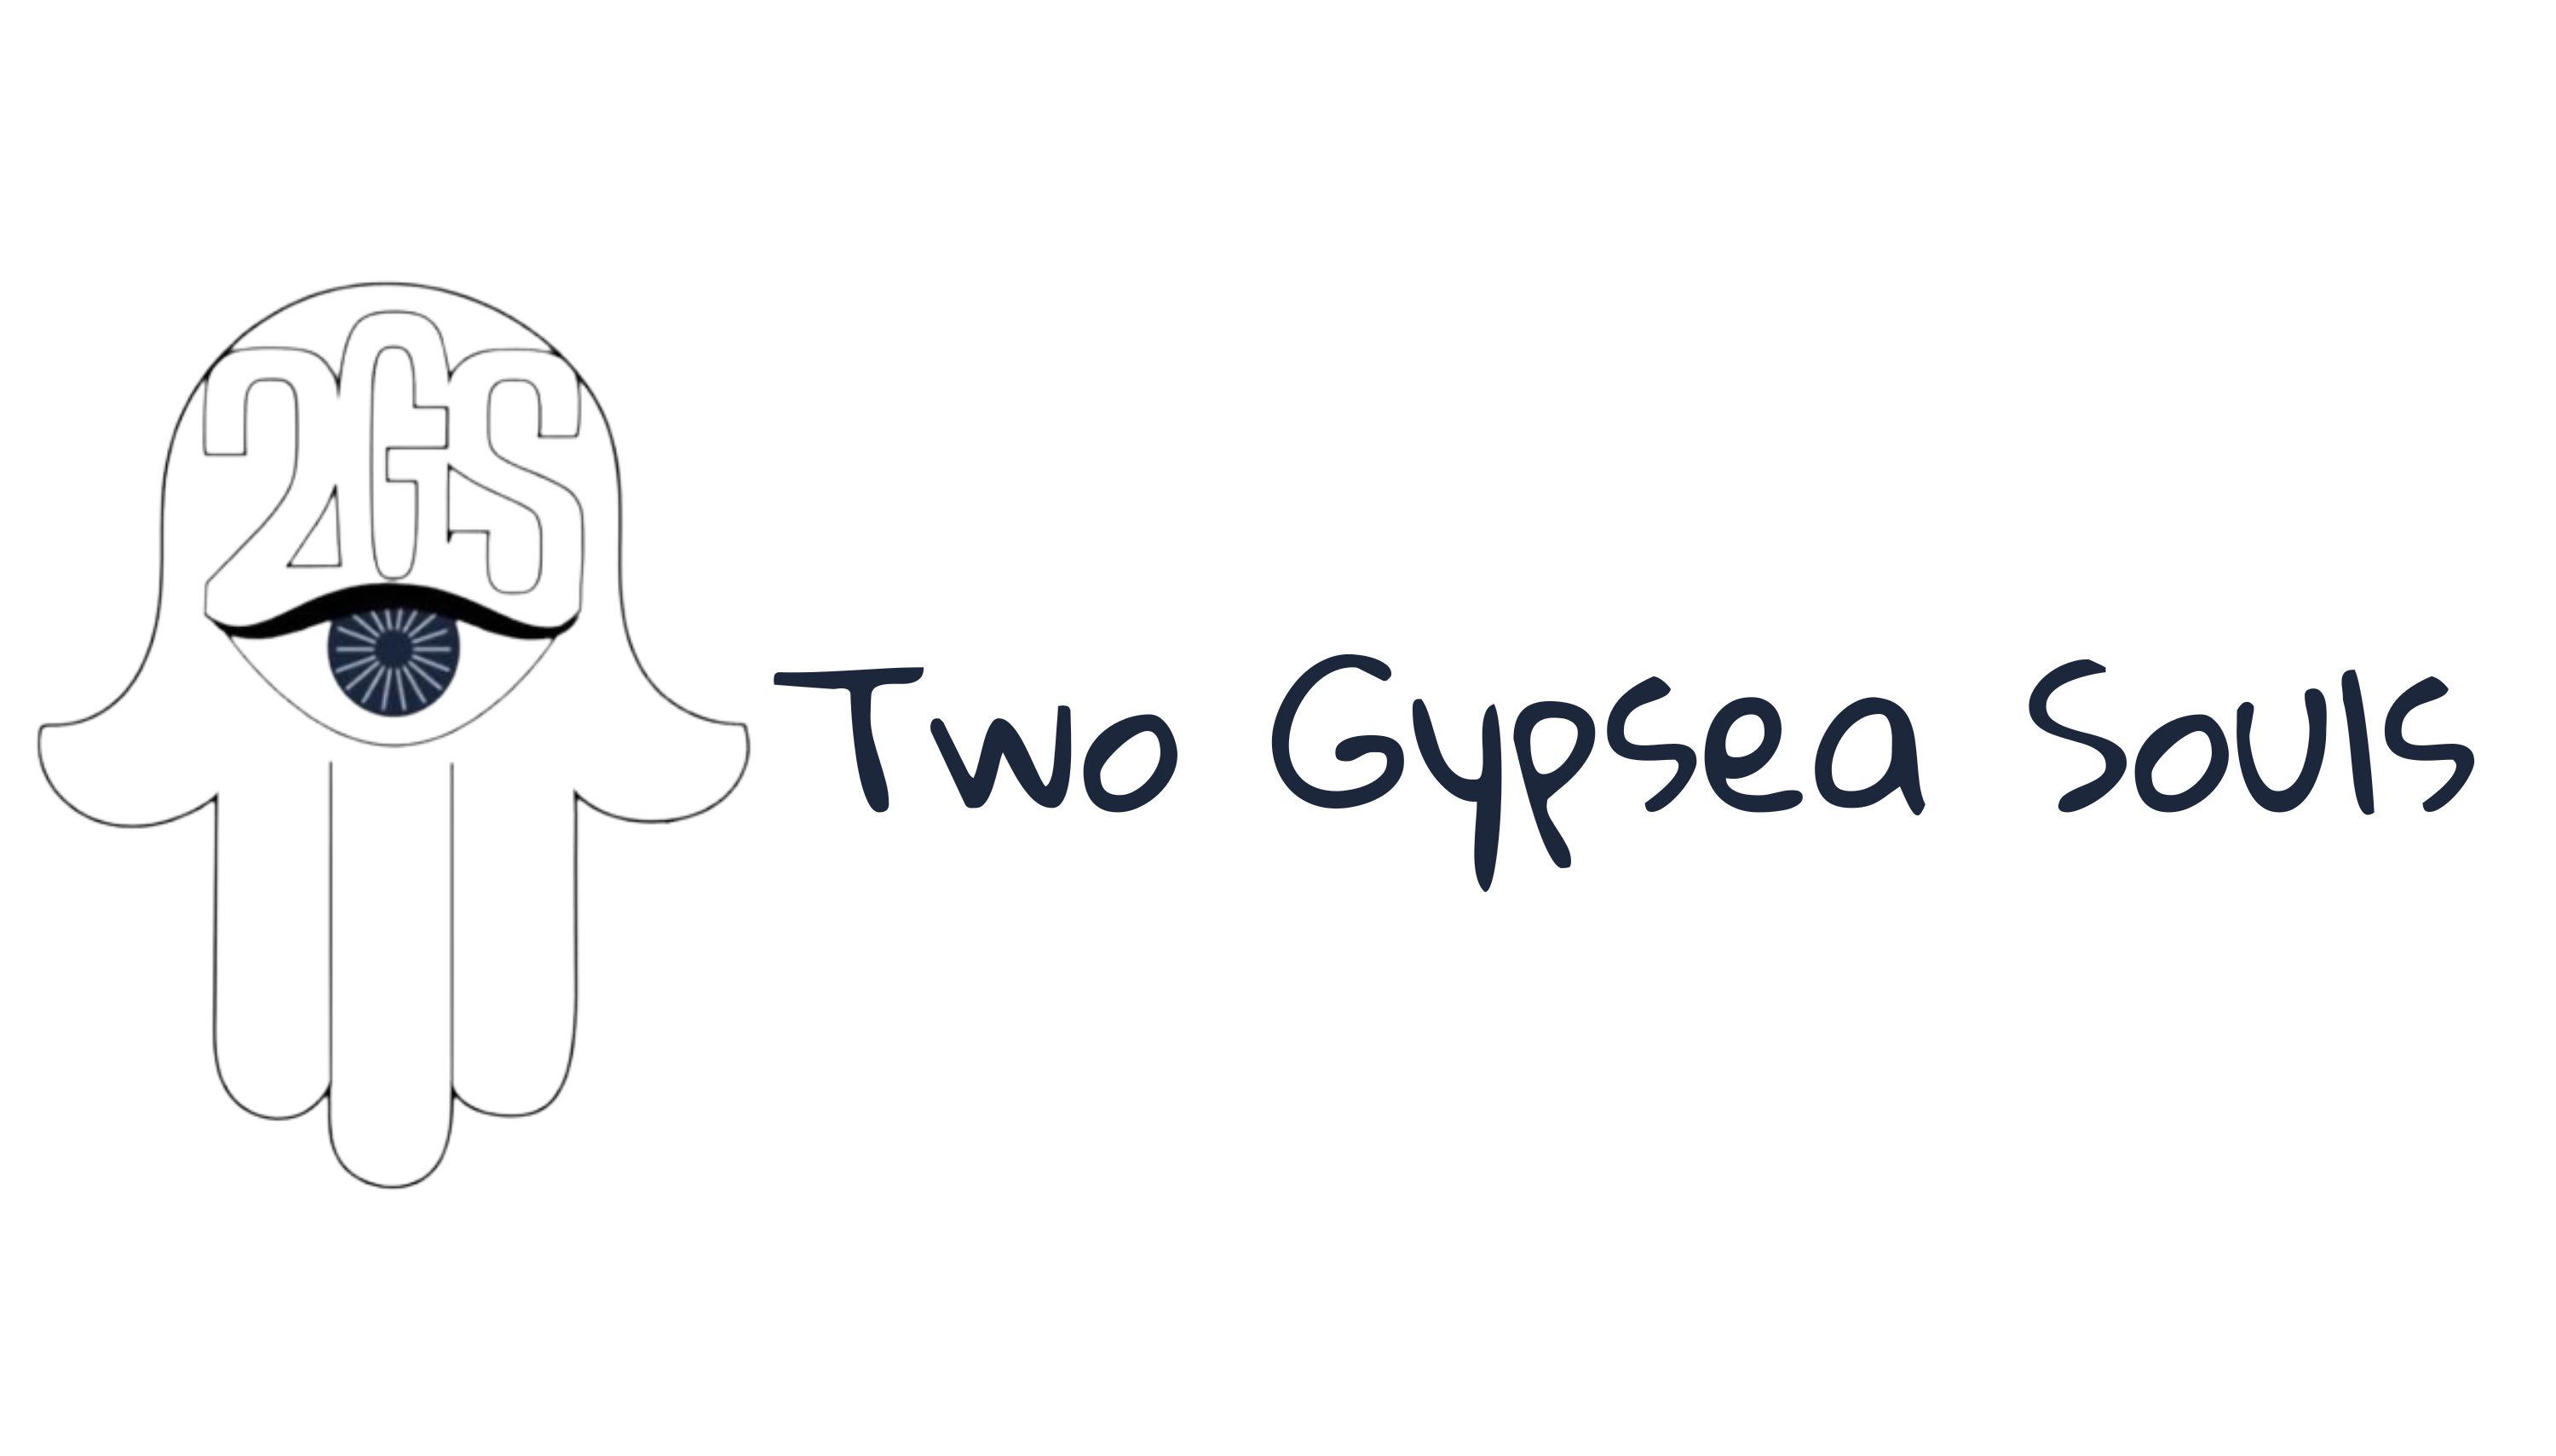 Two Gypsea Souls